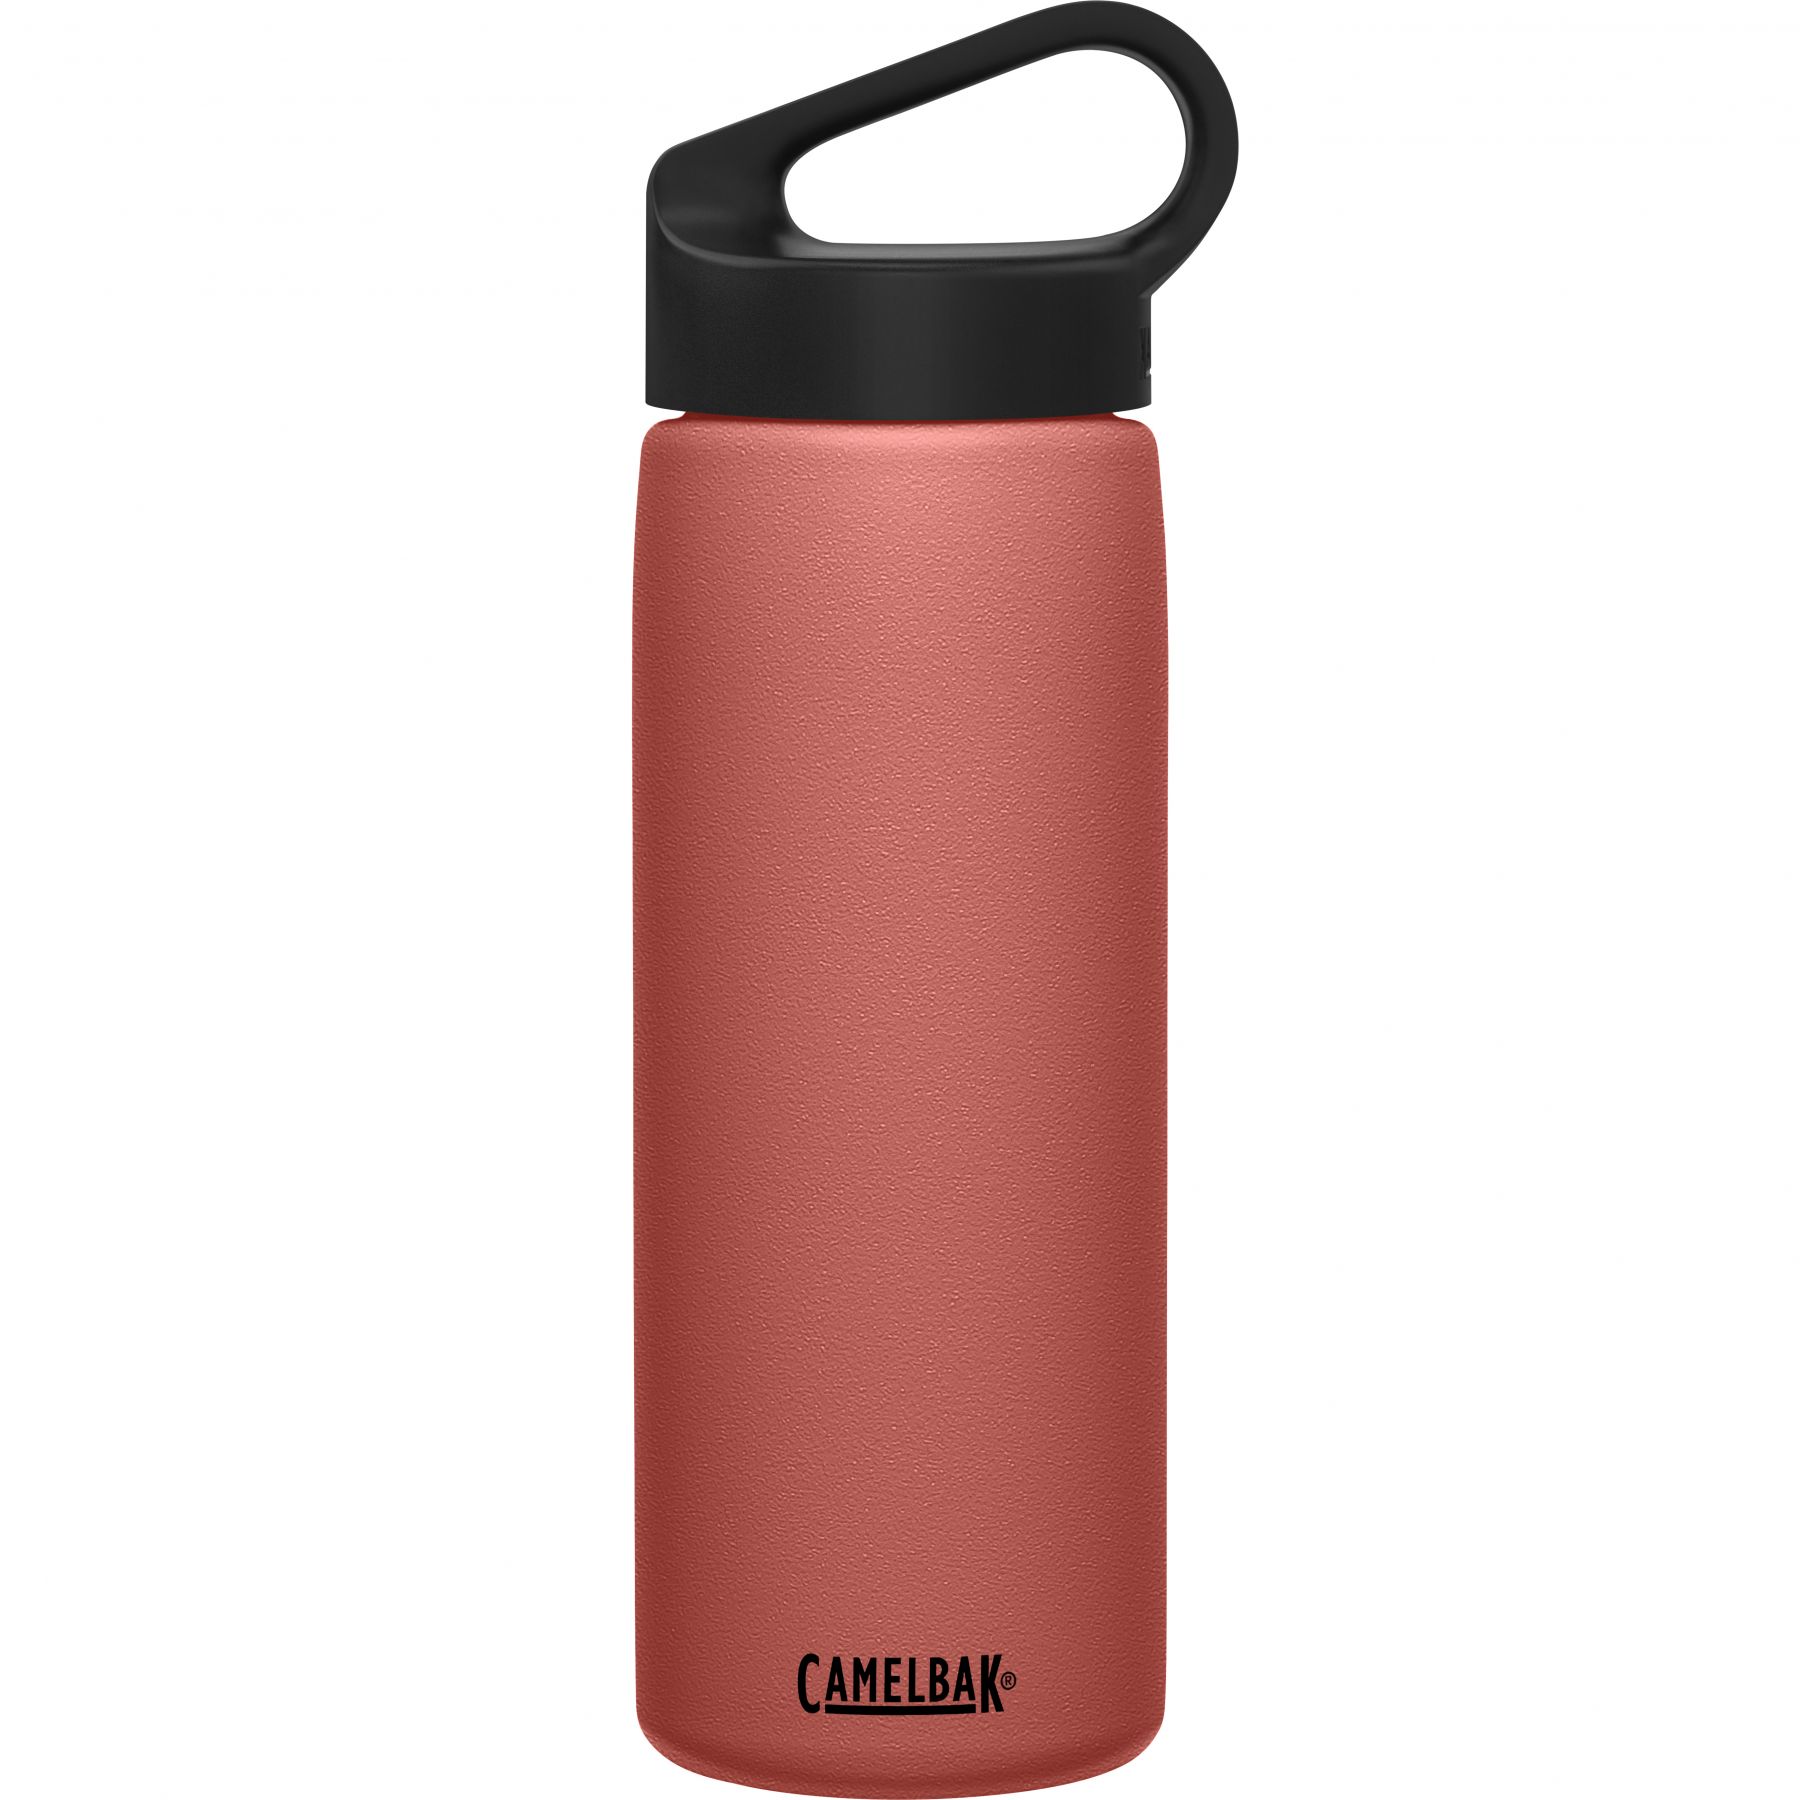 Billede af CamelBak Carry Cap, drikkedunk, 0,6L, pink hos Skisport.dk